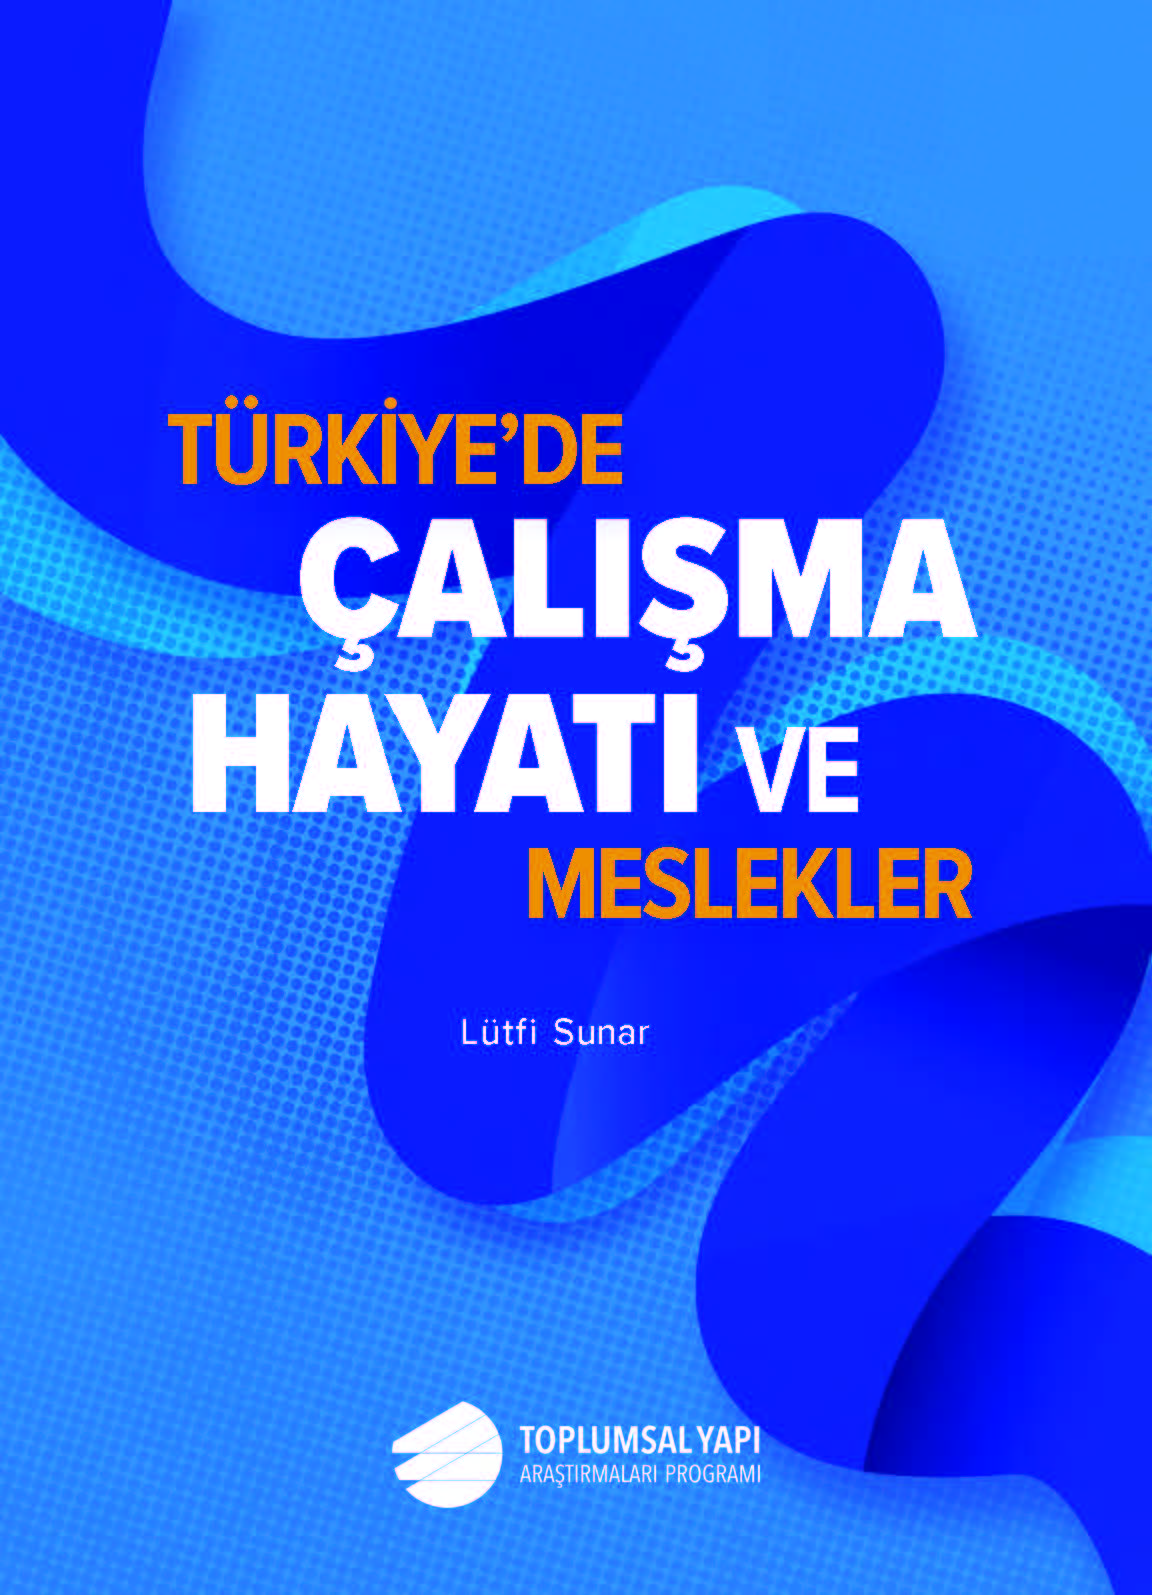 Türkiye Çalışma Hayatı ve Meslekler Araştırması